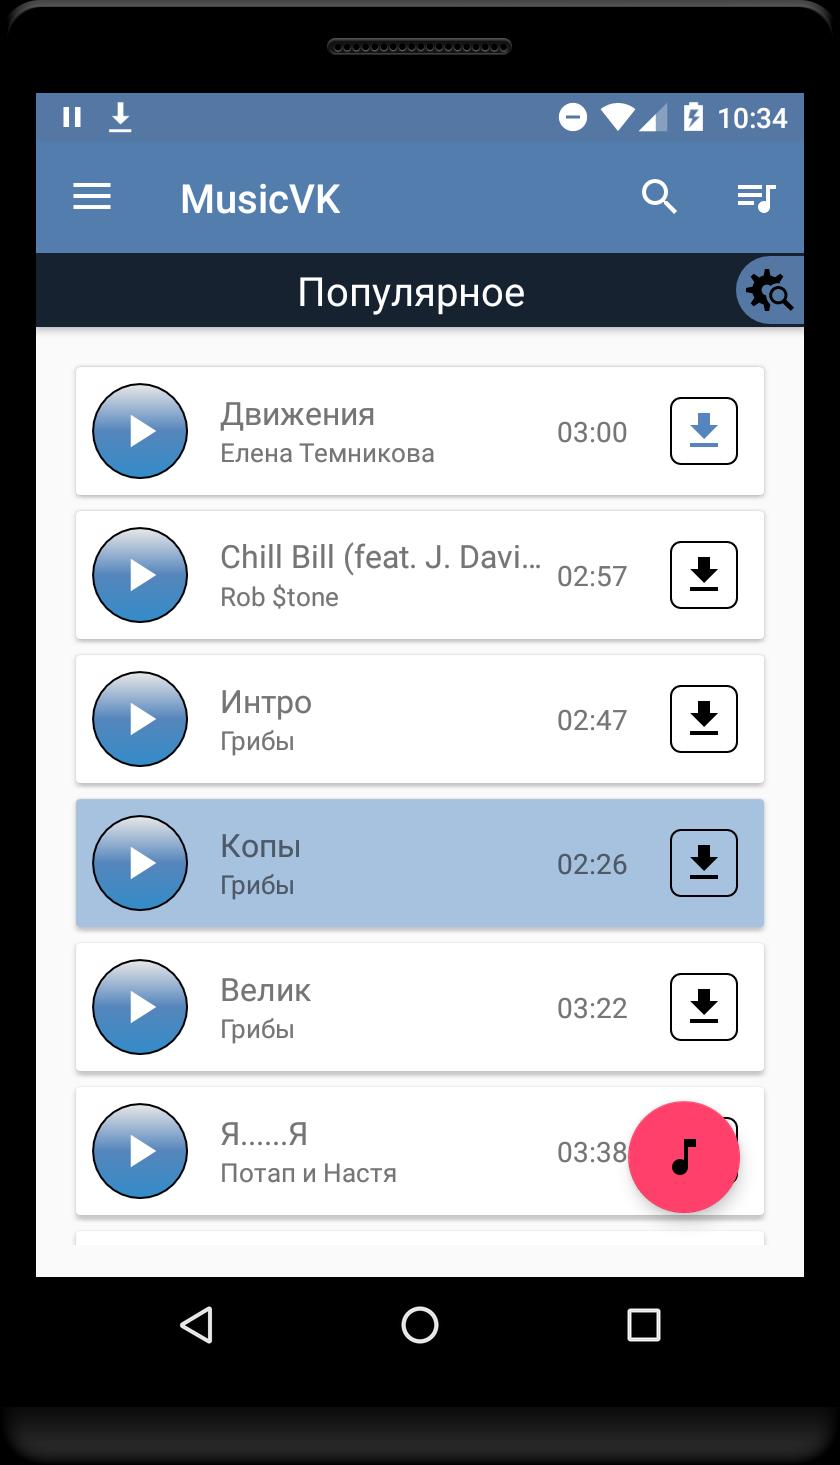 Music VK (Скачать Музыку С ВК) For Android - APK Download